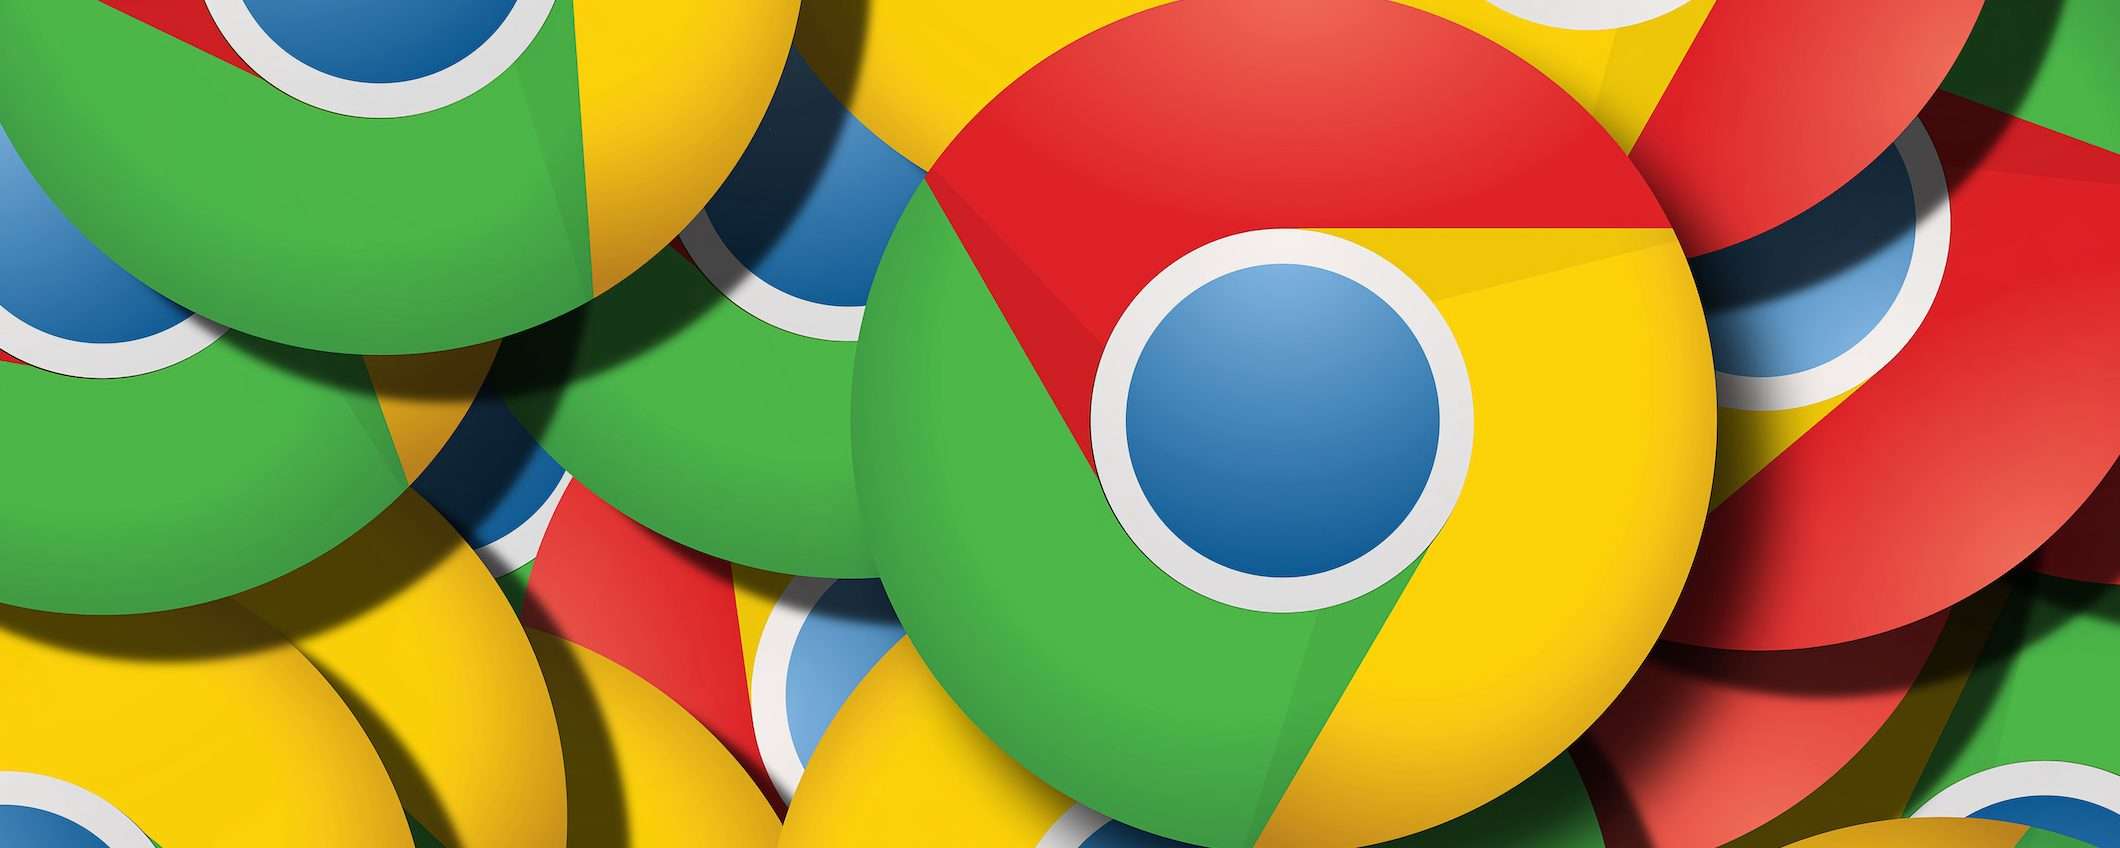 Chrome: update critico per la sicurezza in distribuzione